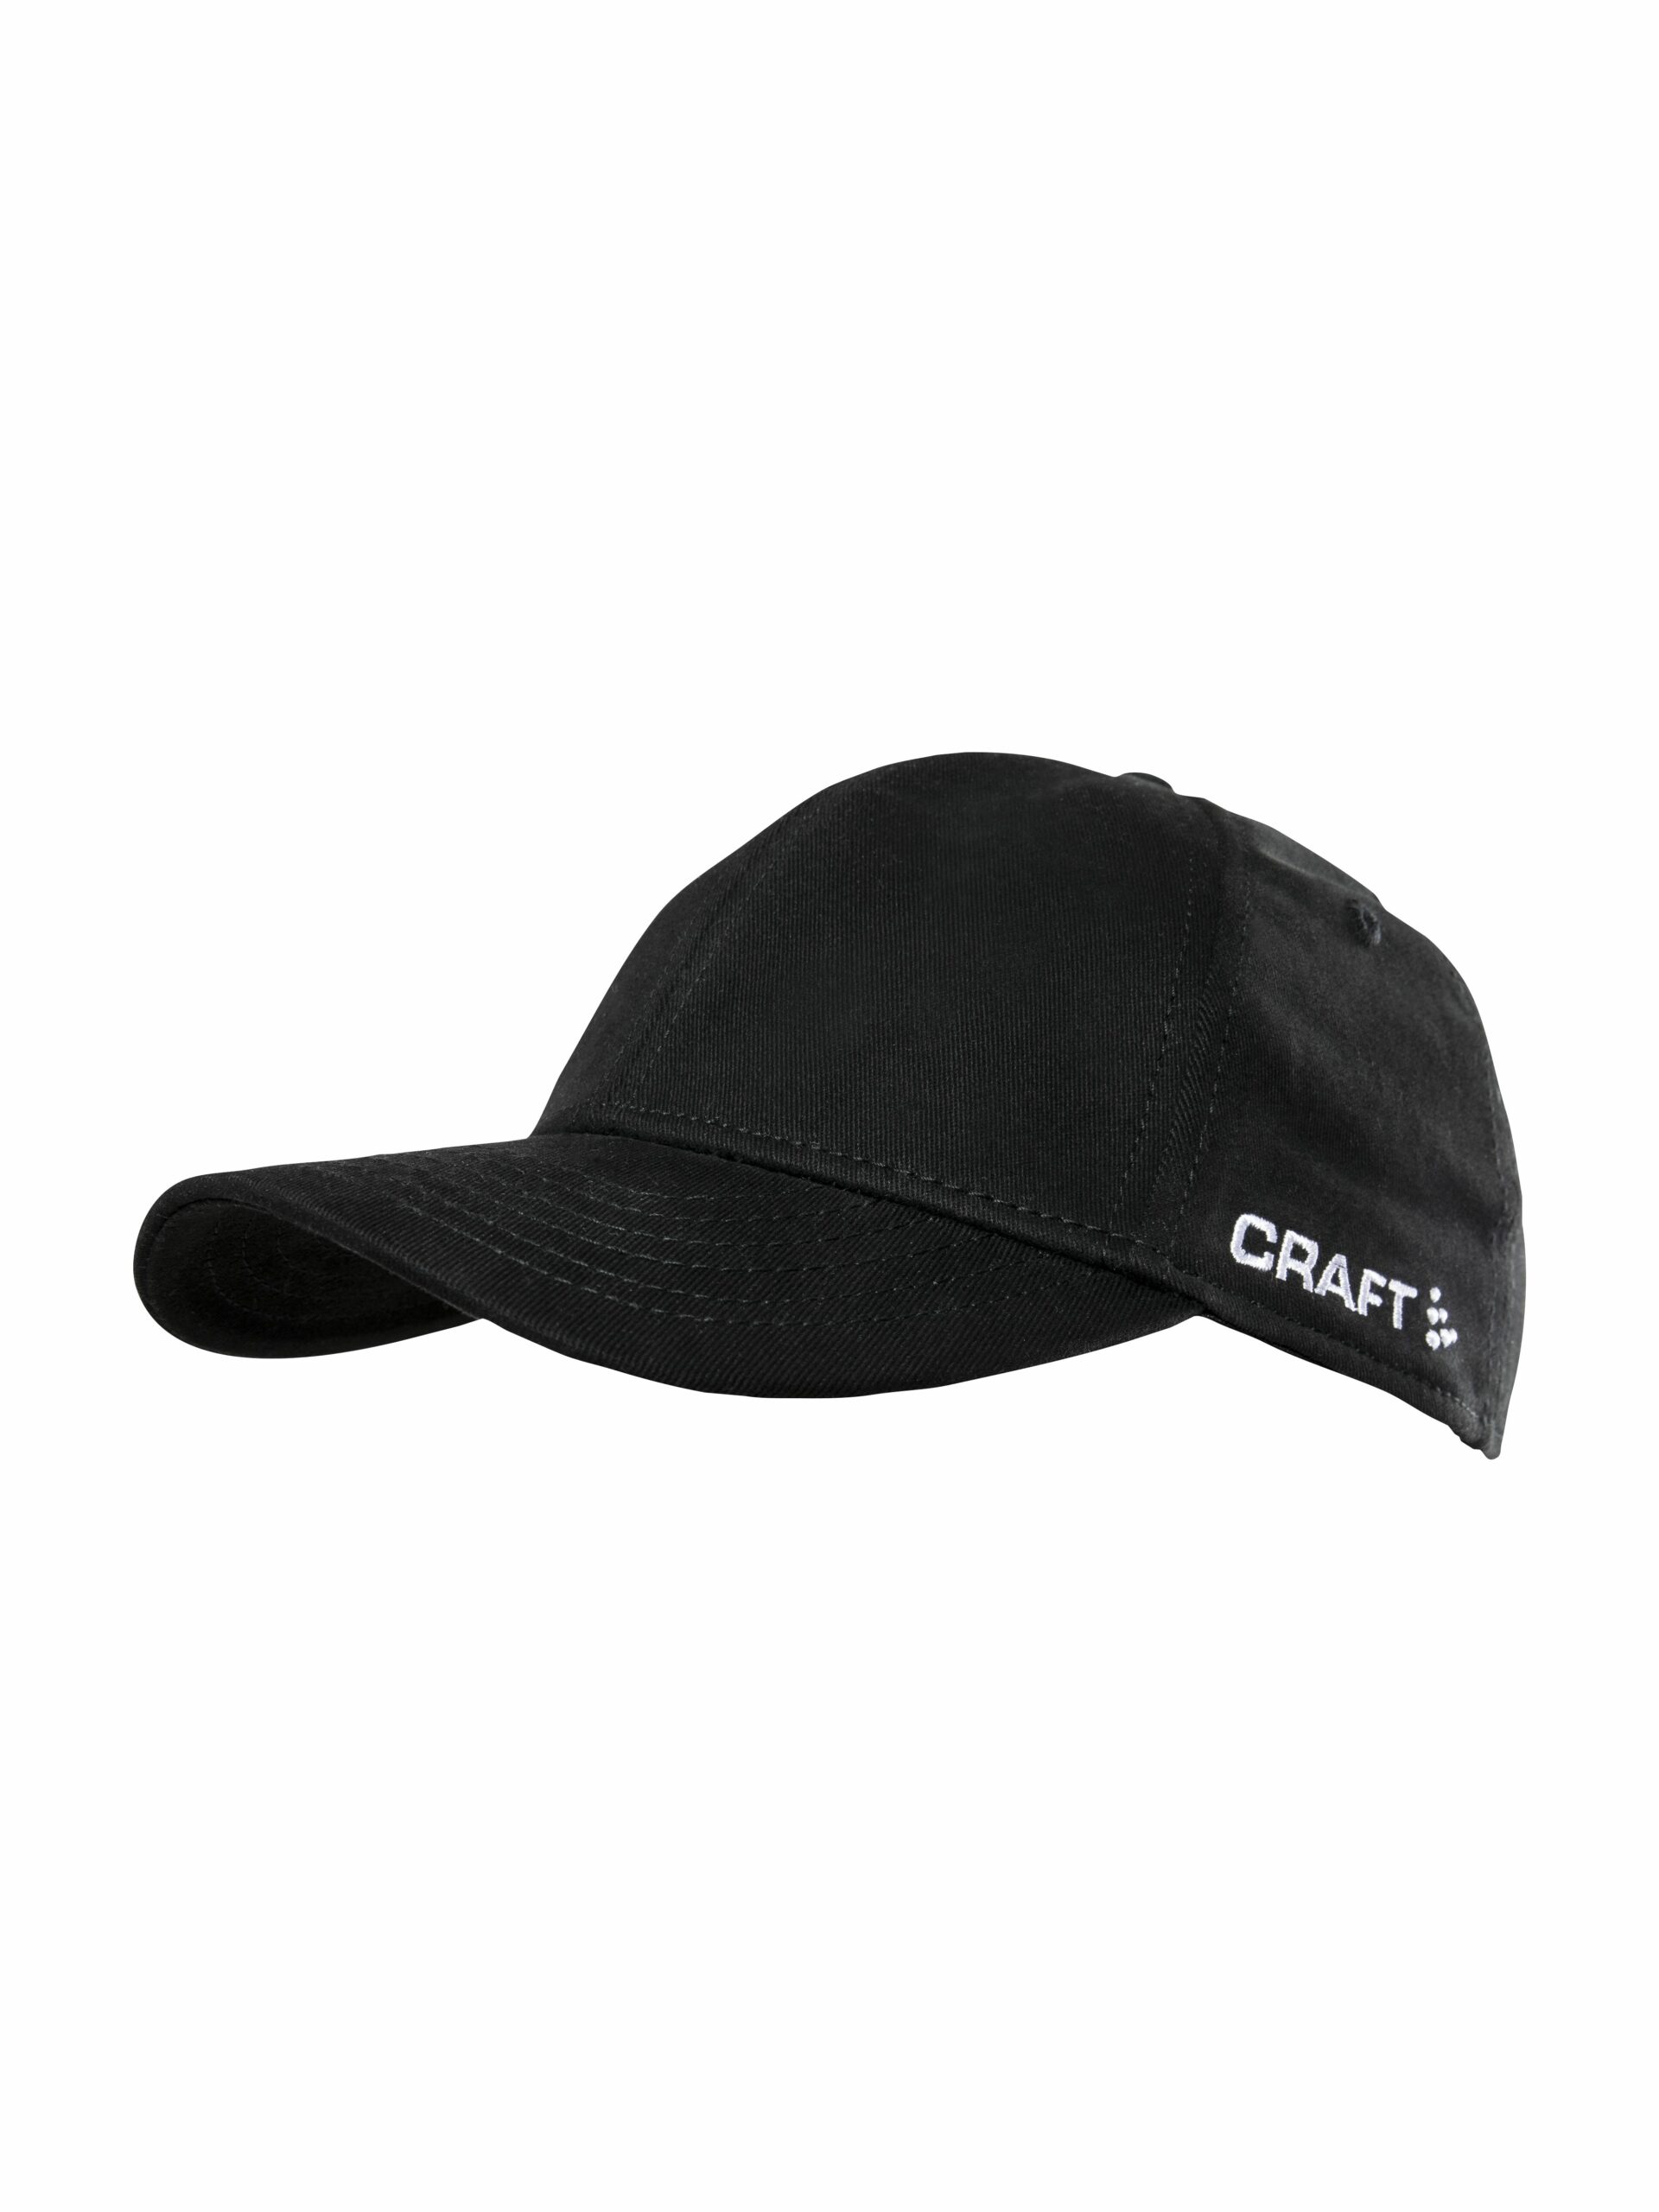 Craft - Community Cap - Black L/XL thumbnail